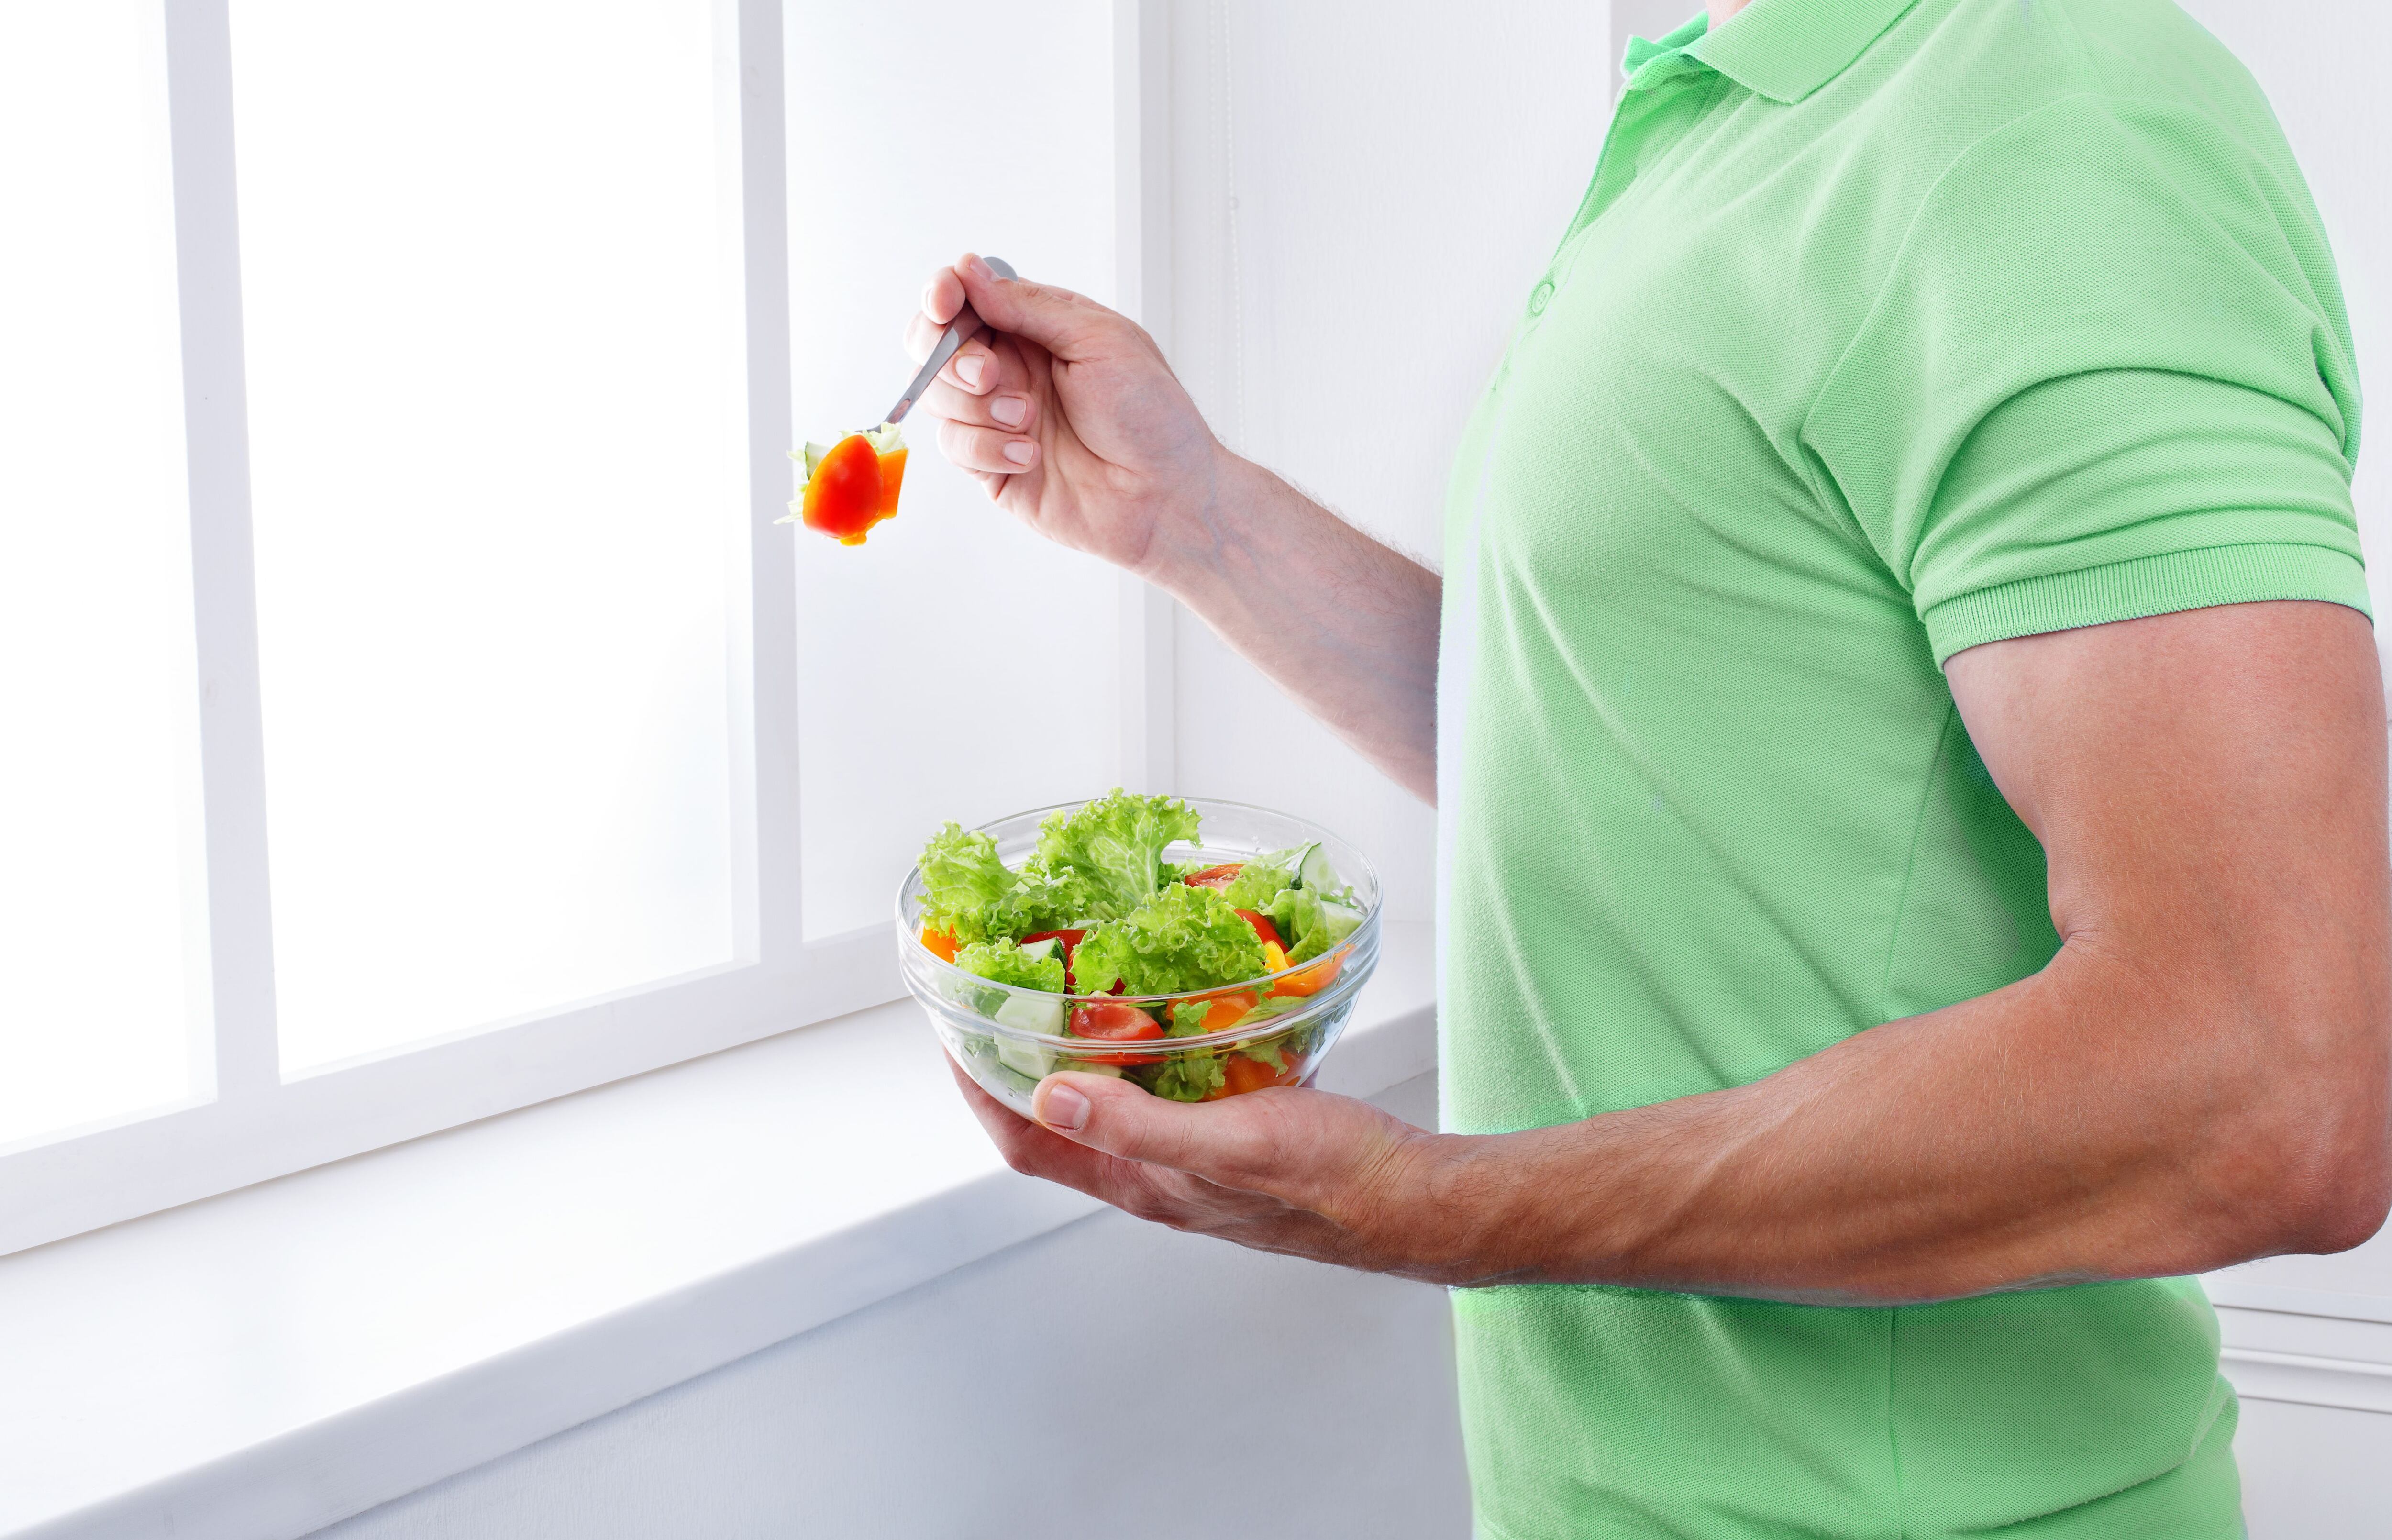 Una alimentación balanceada, que incluya frutas y verduras es vital para una buena salud digestiva. 

Fotografía: Shutterstock